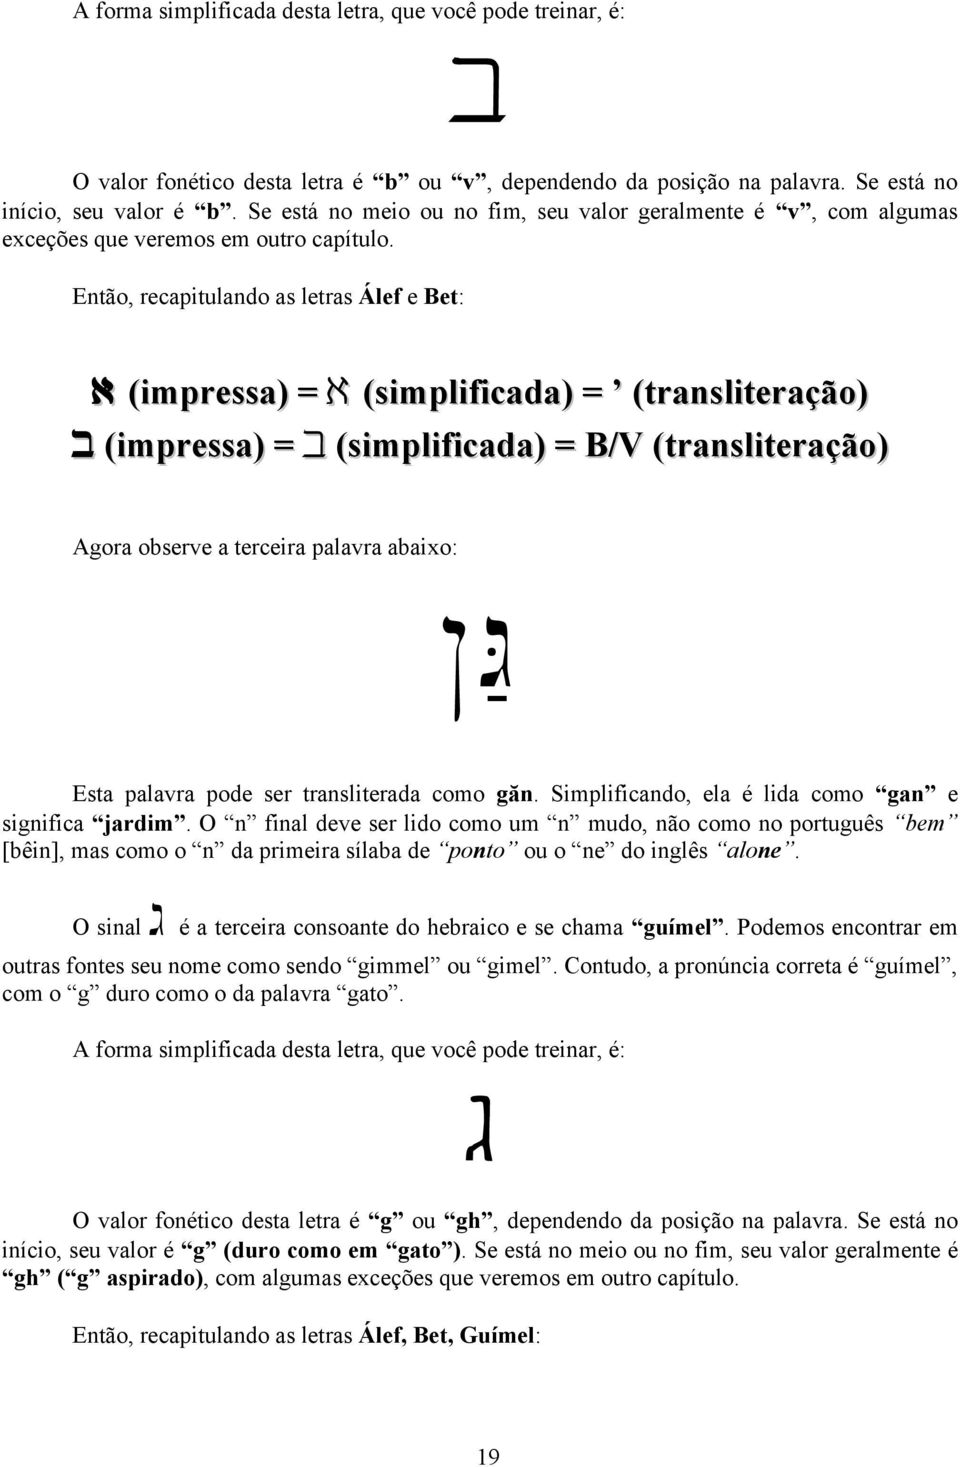 Então, recapitulando as letras Álef e Bet: ) (impressa) = ) (simplificada) = (transliteração) b (impressa) = b (simplificada) = B/V (transliteração) Agora observe a terceira palavra abaixo: Ng%A Esta